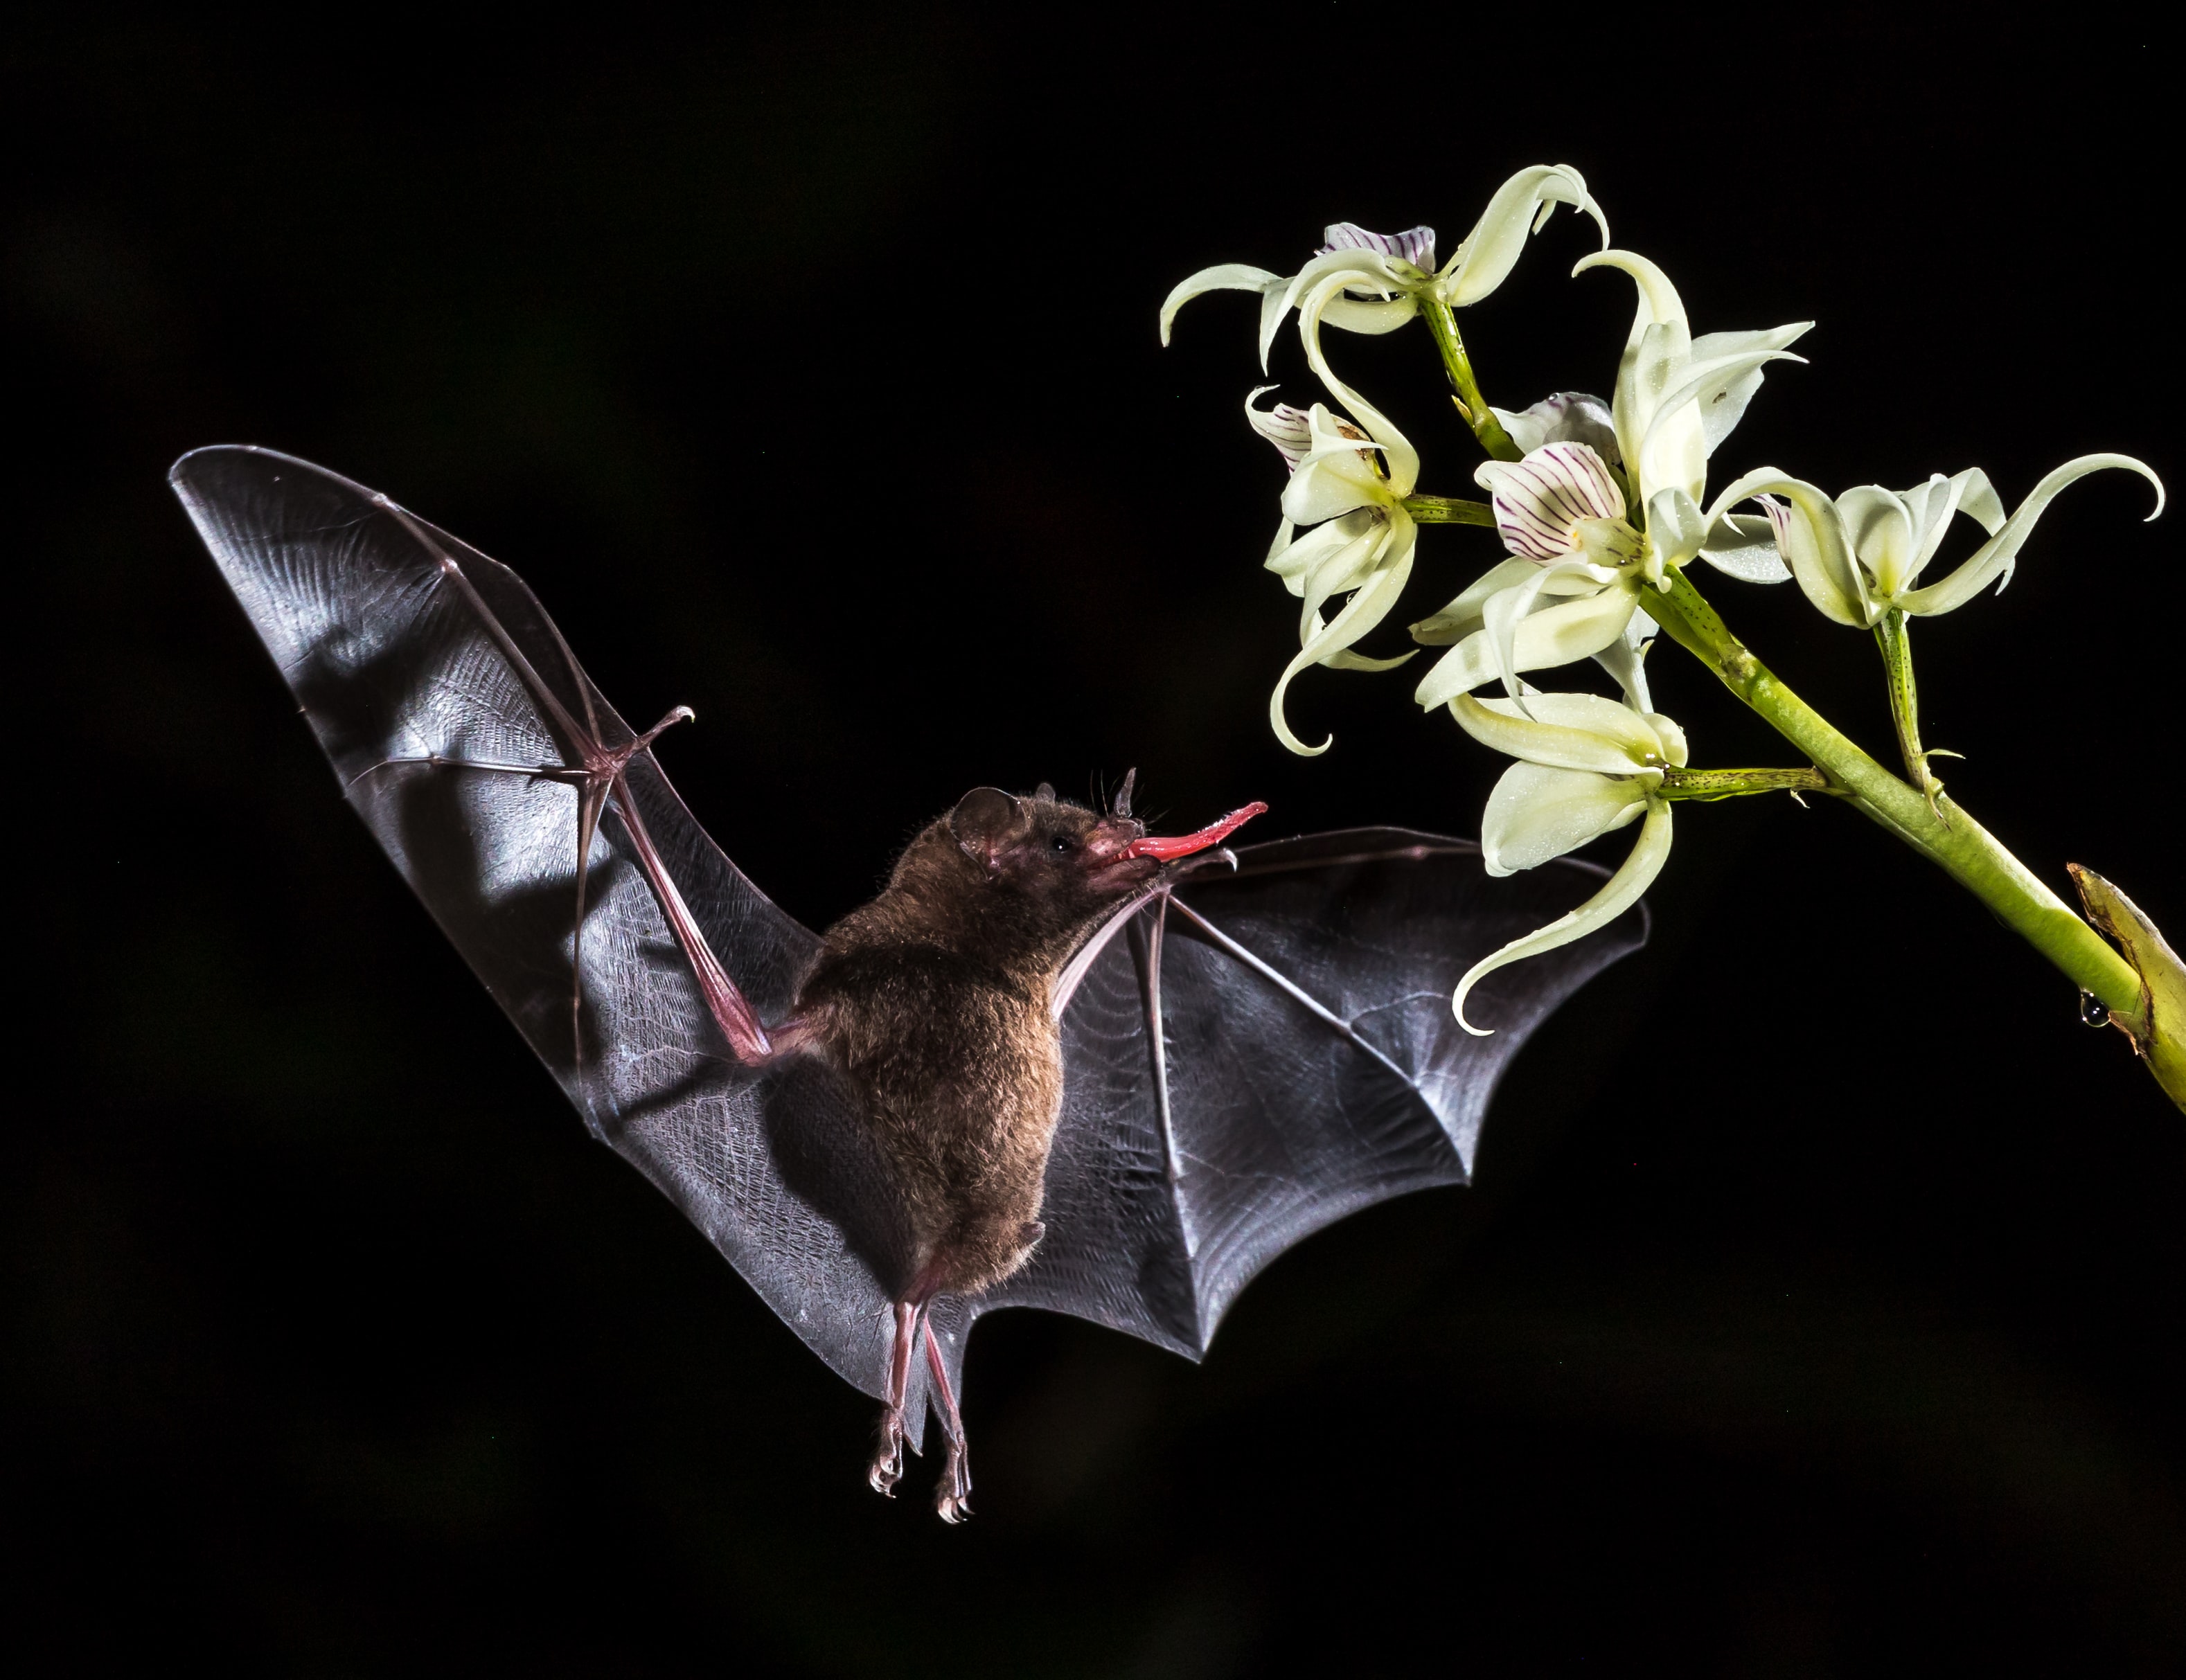 Murciélago bebiendo néctar de una flor nocturna.